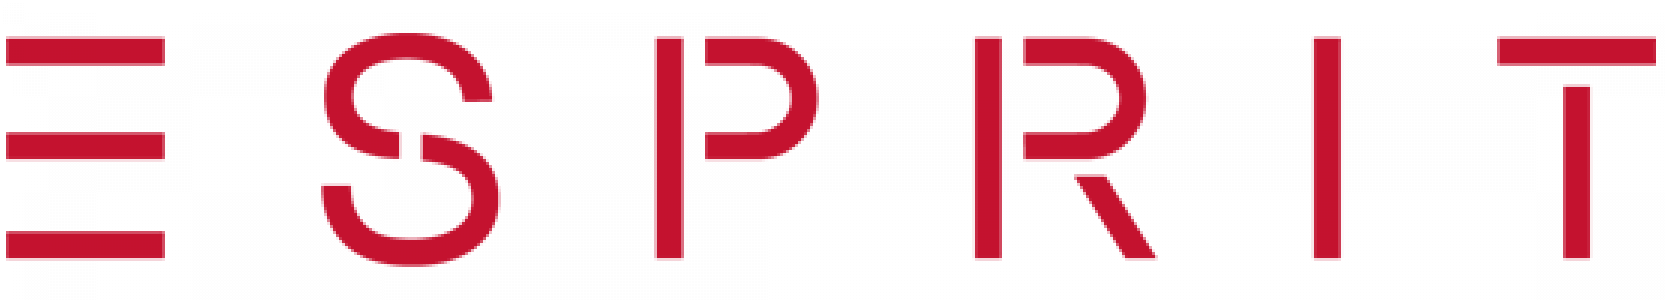 esprit_logo